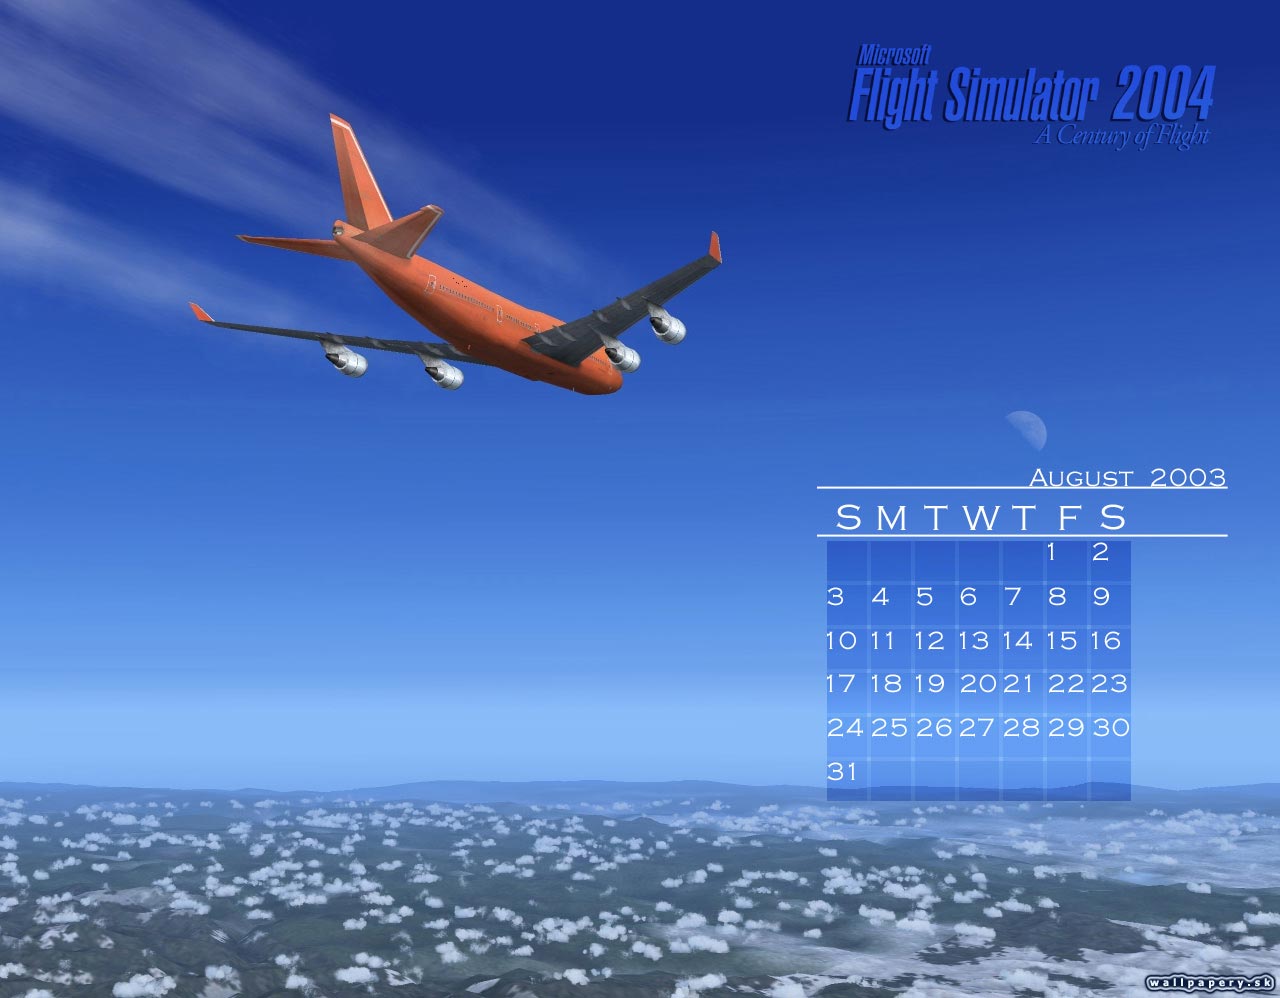 Microsoft Flight Simulator 2004: A Century of Flight - wallpaper 1